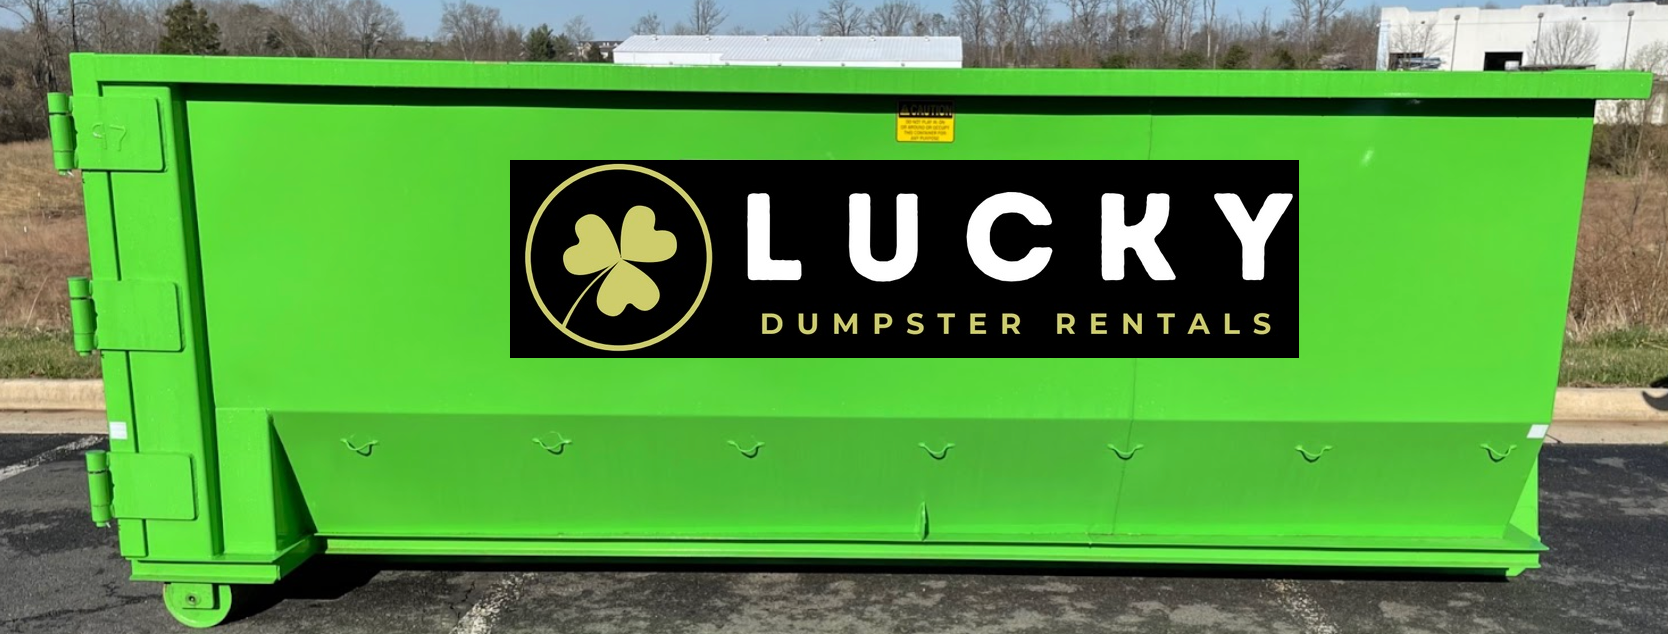 Carrollton Dumpster Rental - Lucky Dumpster Rentals of Carrollton, GA. 